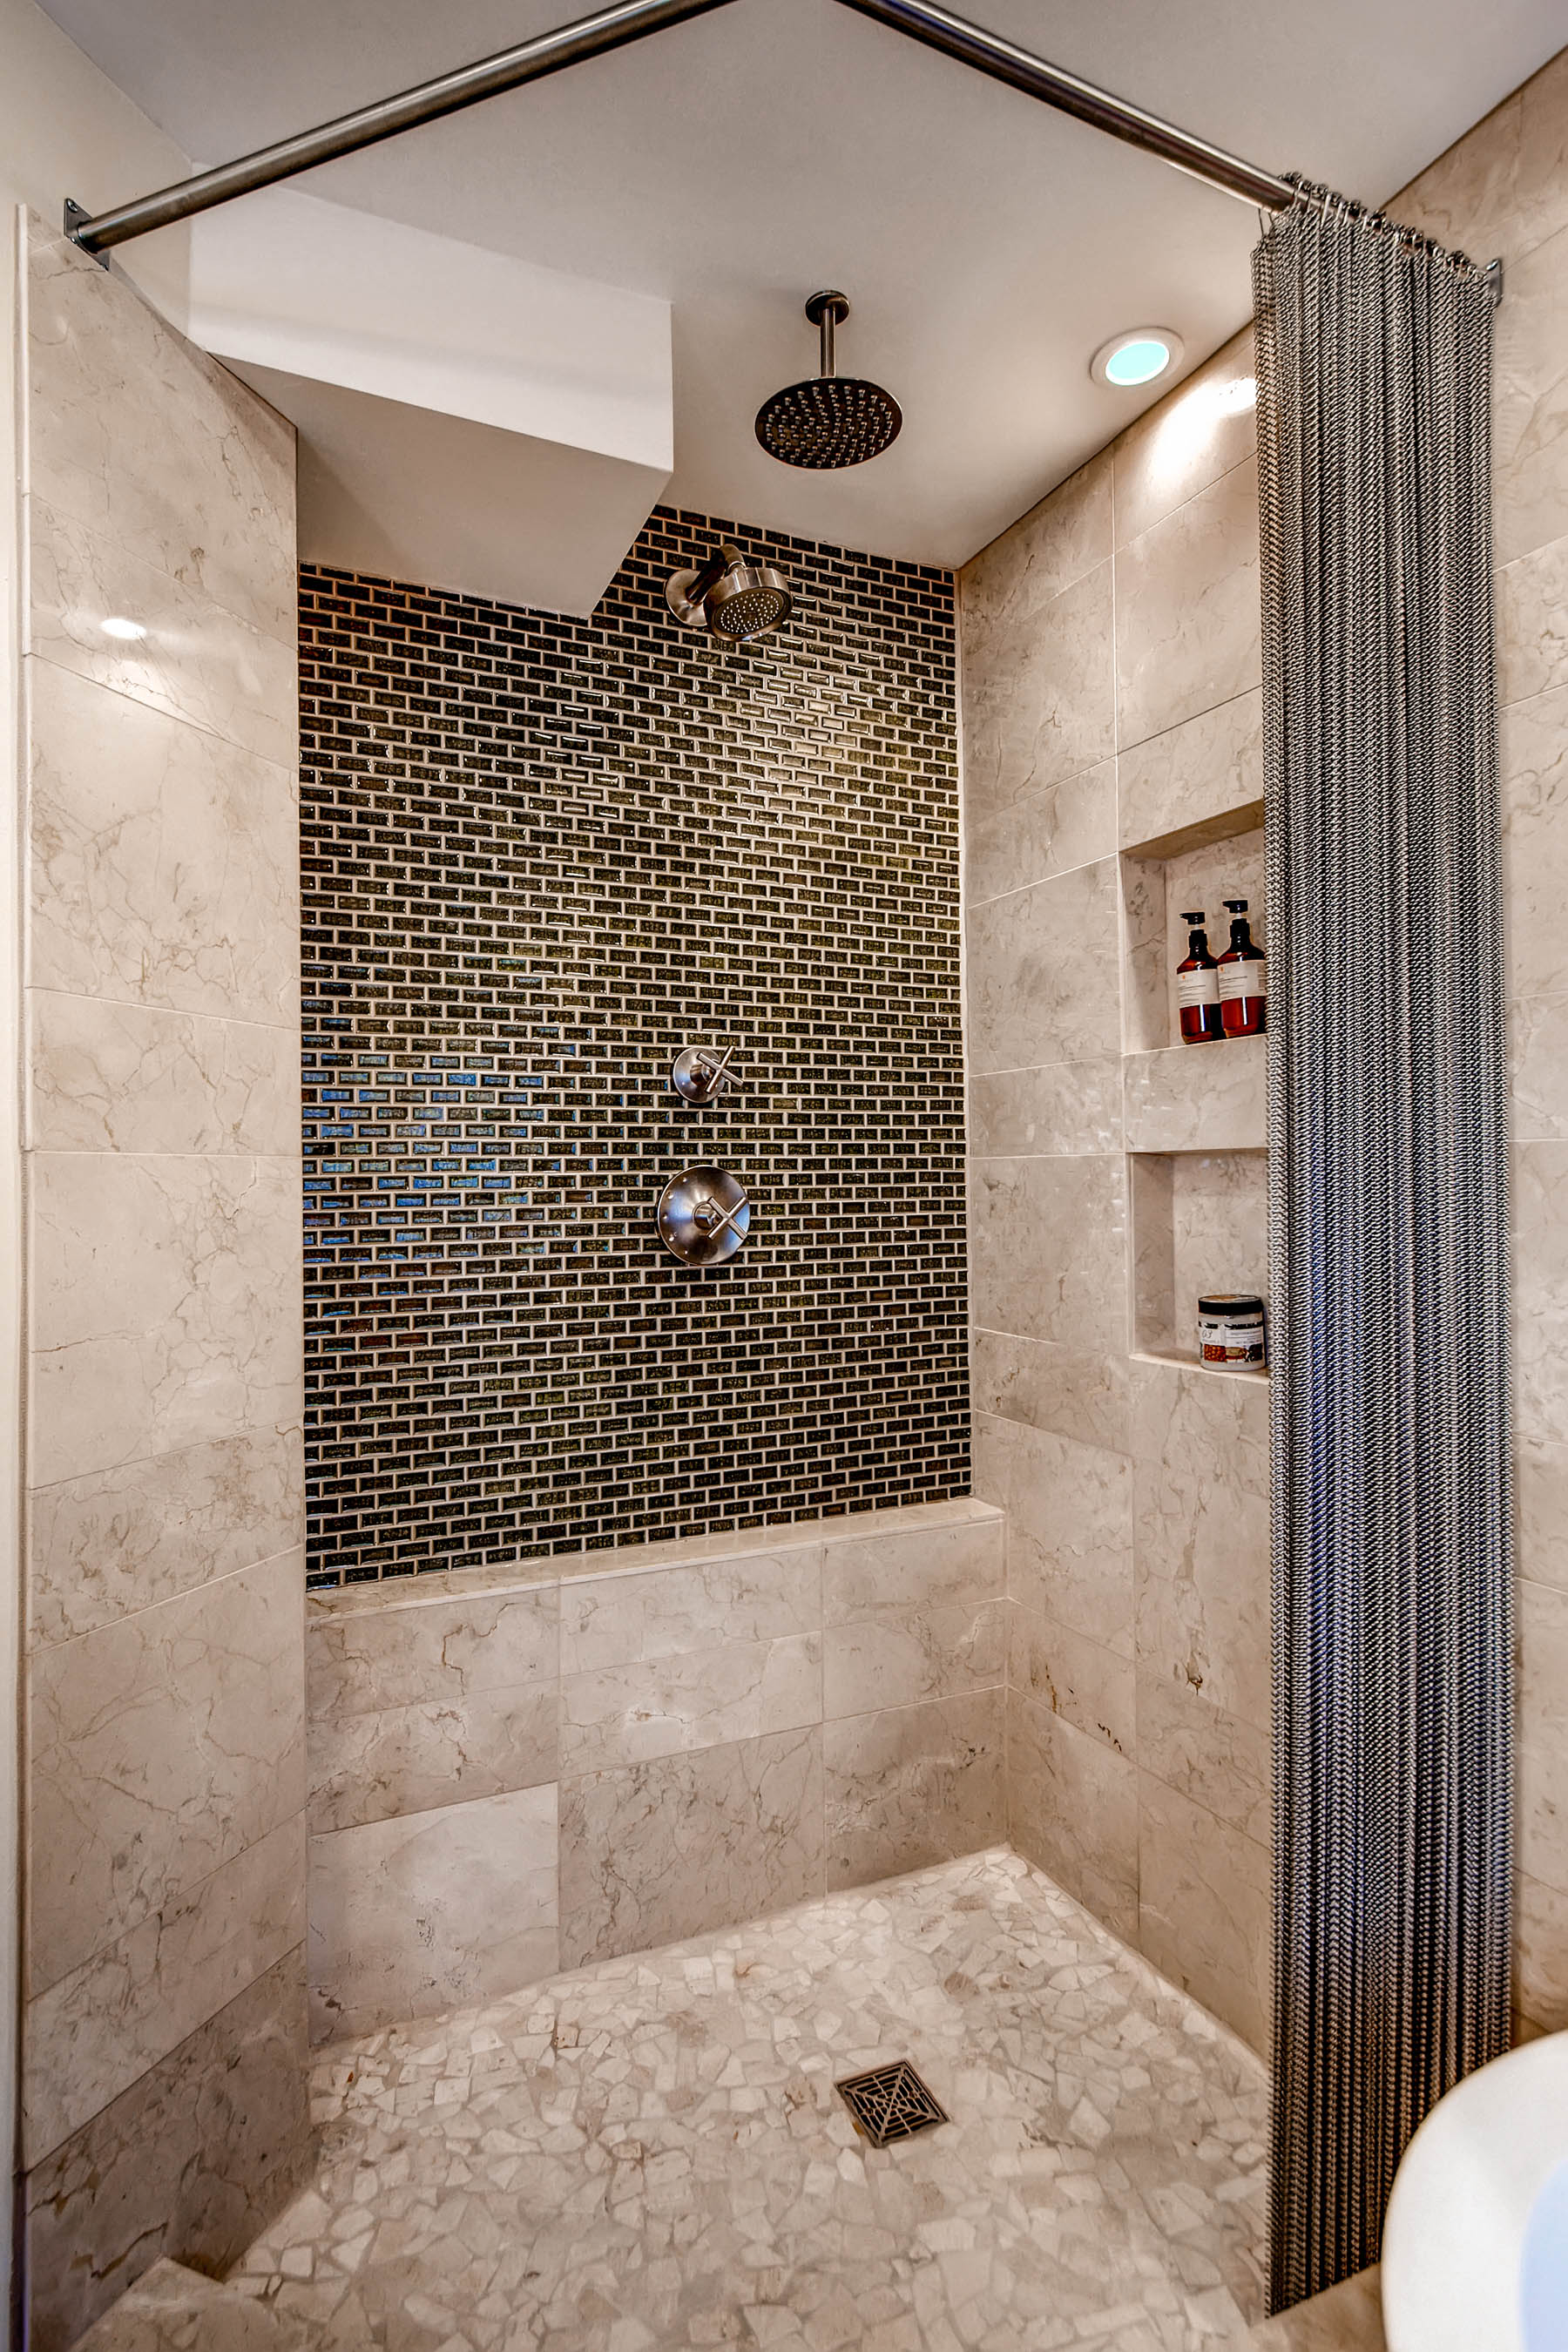 img/guest-bathroom-tile-designs.jpg